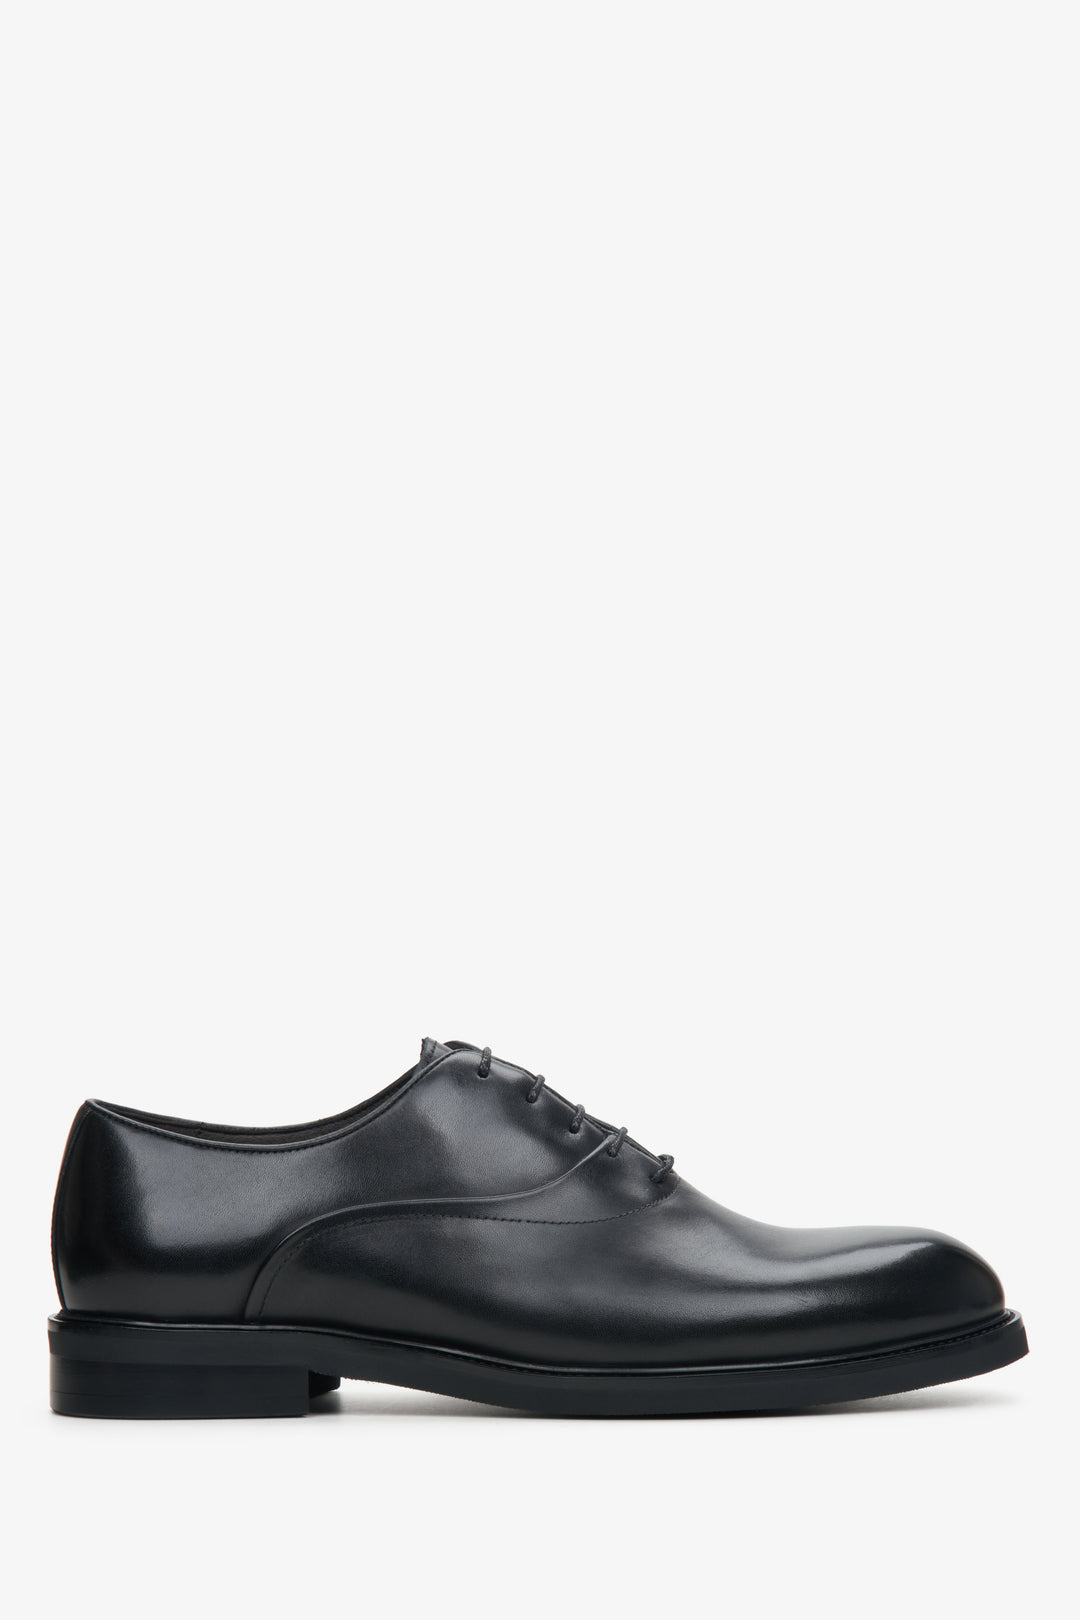 Men's black leather shoes by Estro - shoe profile.